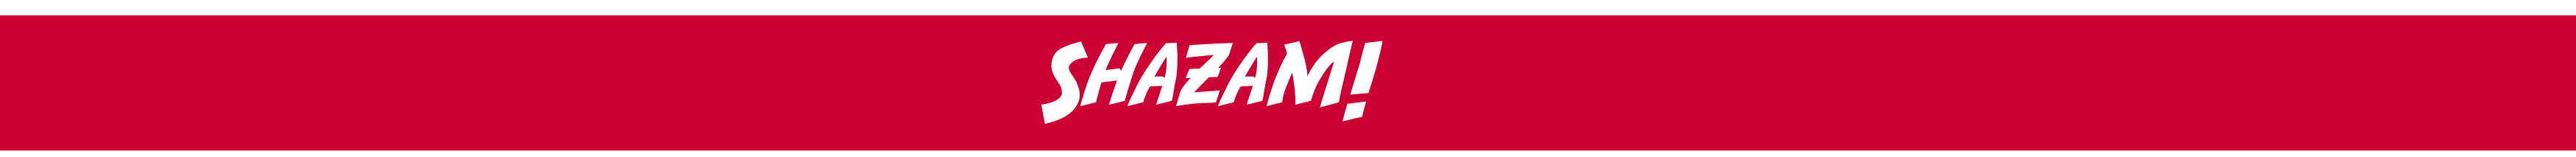 Shazam Sponsor Banner 2016